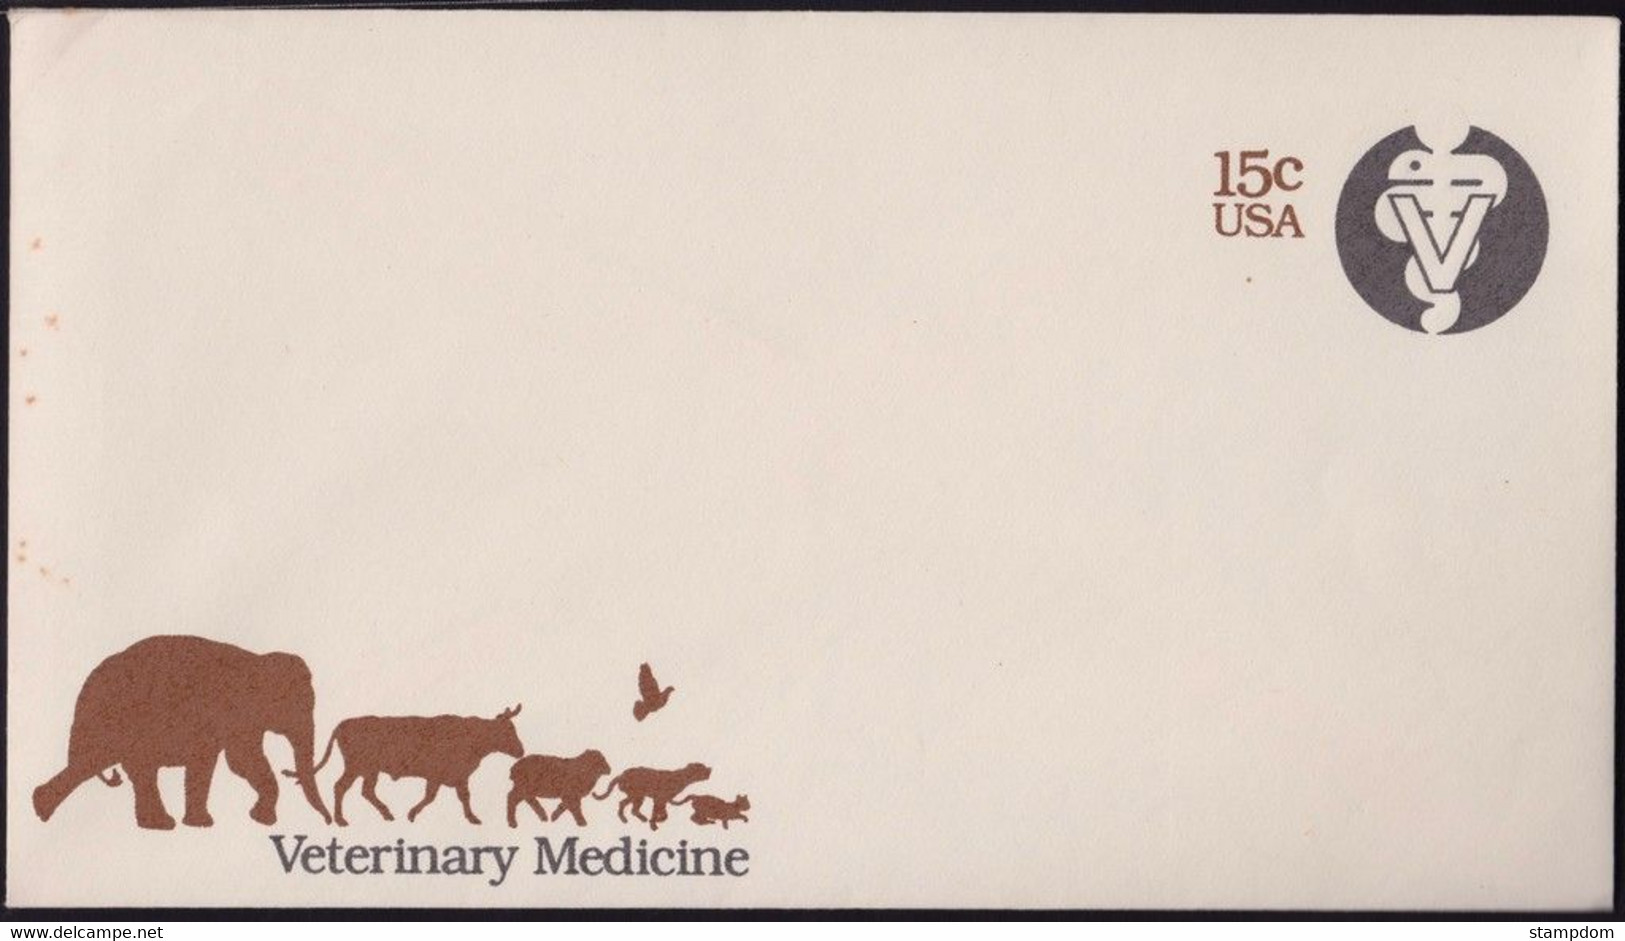 USA 15c Veterinary Medicine PSE - UNUSED @D3347 - 1981-00